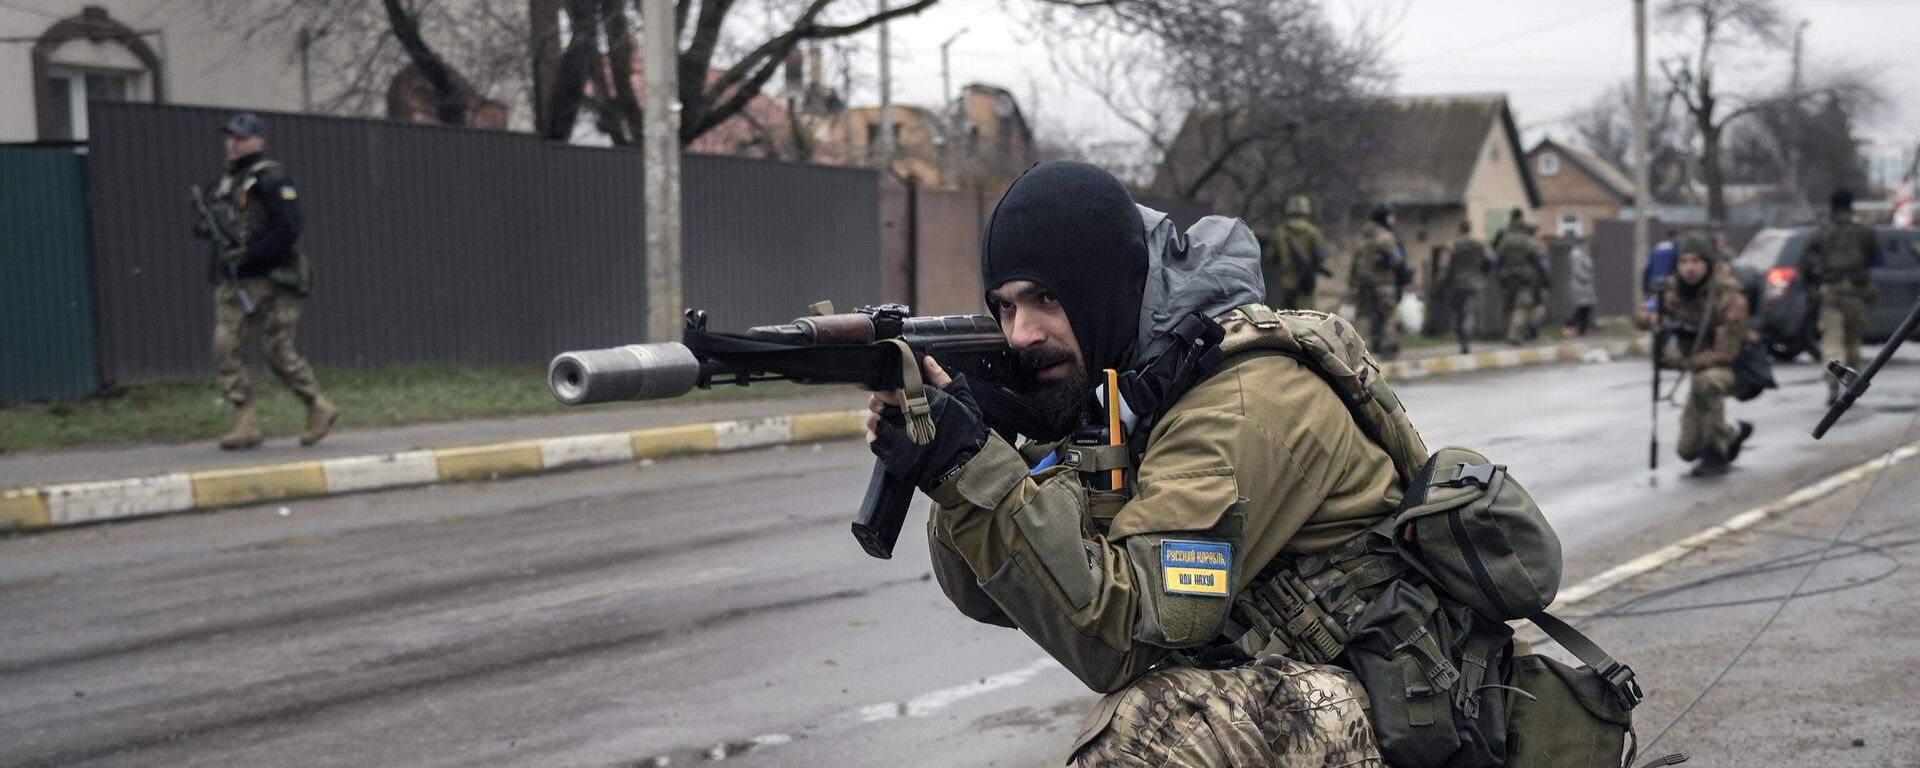 Украинские военнослужащие в пригороде Киева Буче, 2 апреля 2022 года - Sputnik Латвия, 1920, 04.04.2022